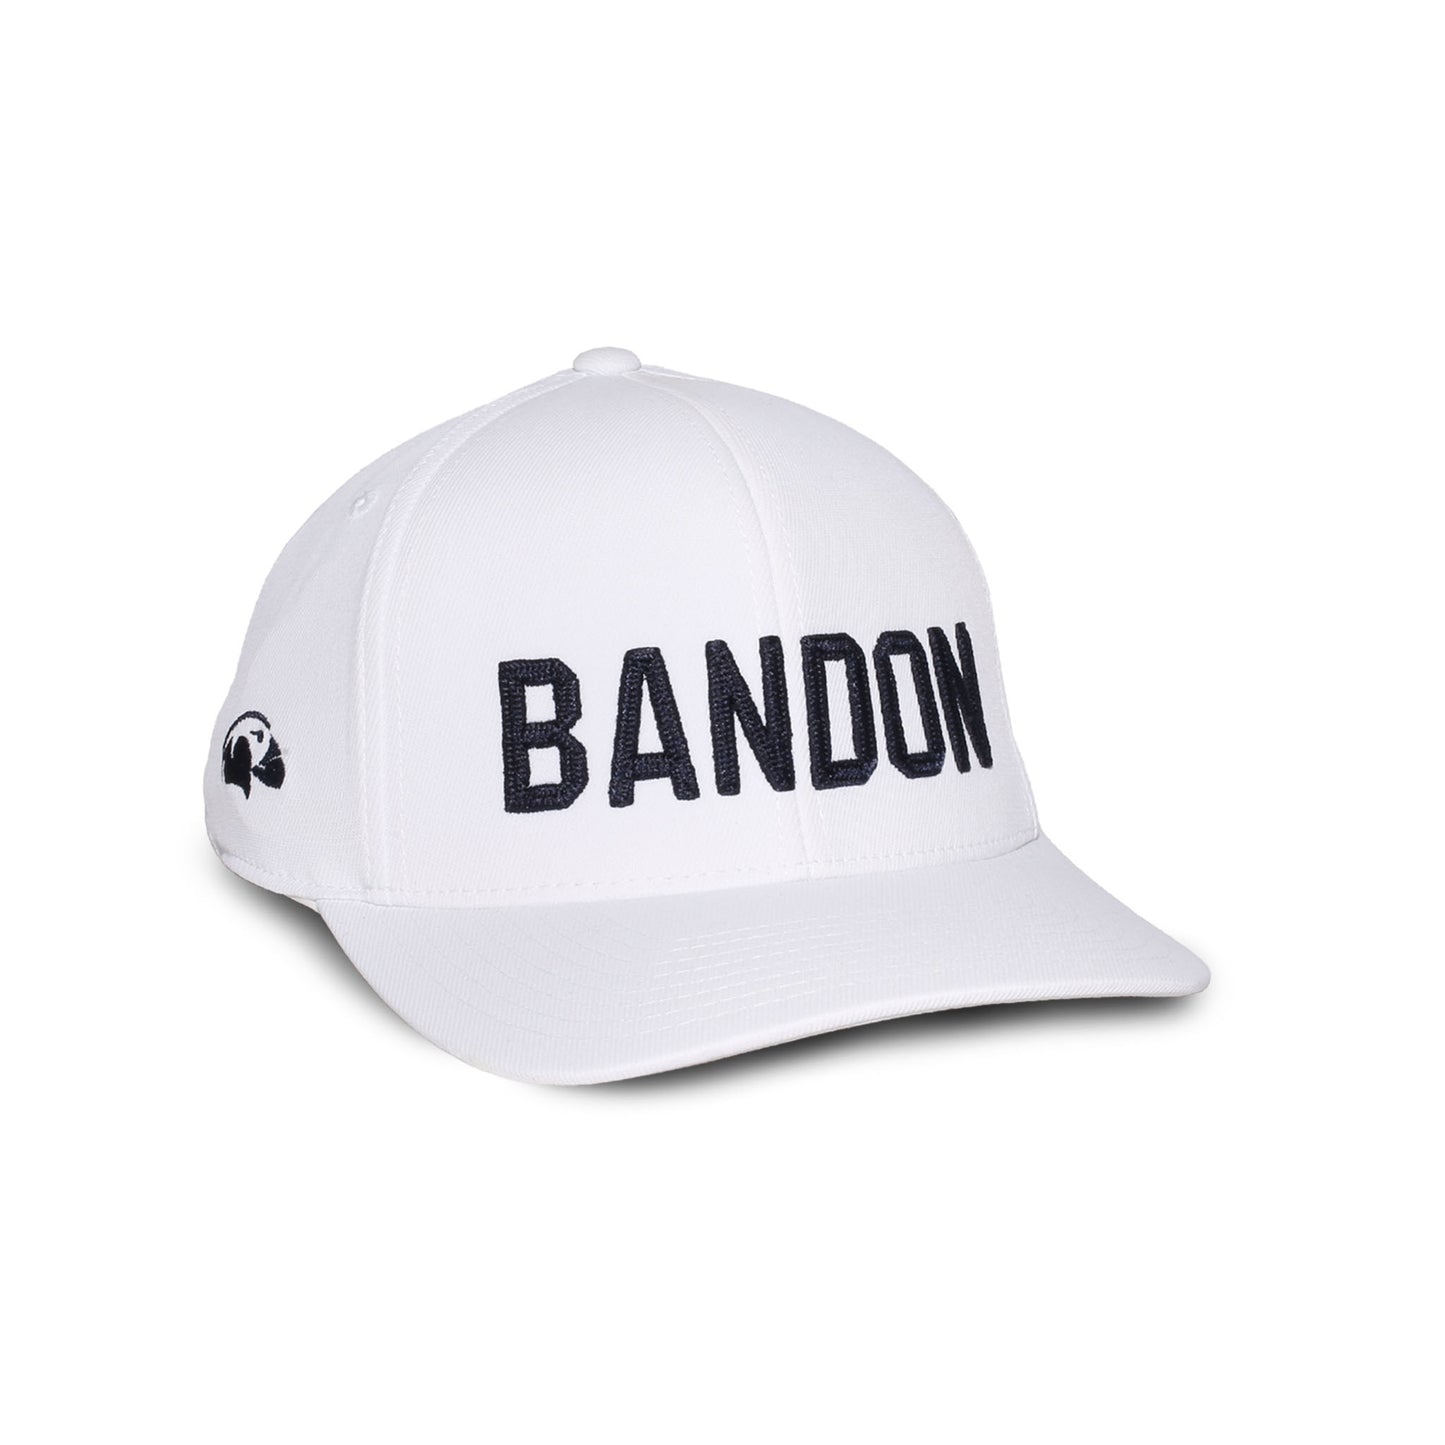 G/Fore FlexFit Hat - Bandon Dunes